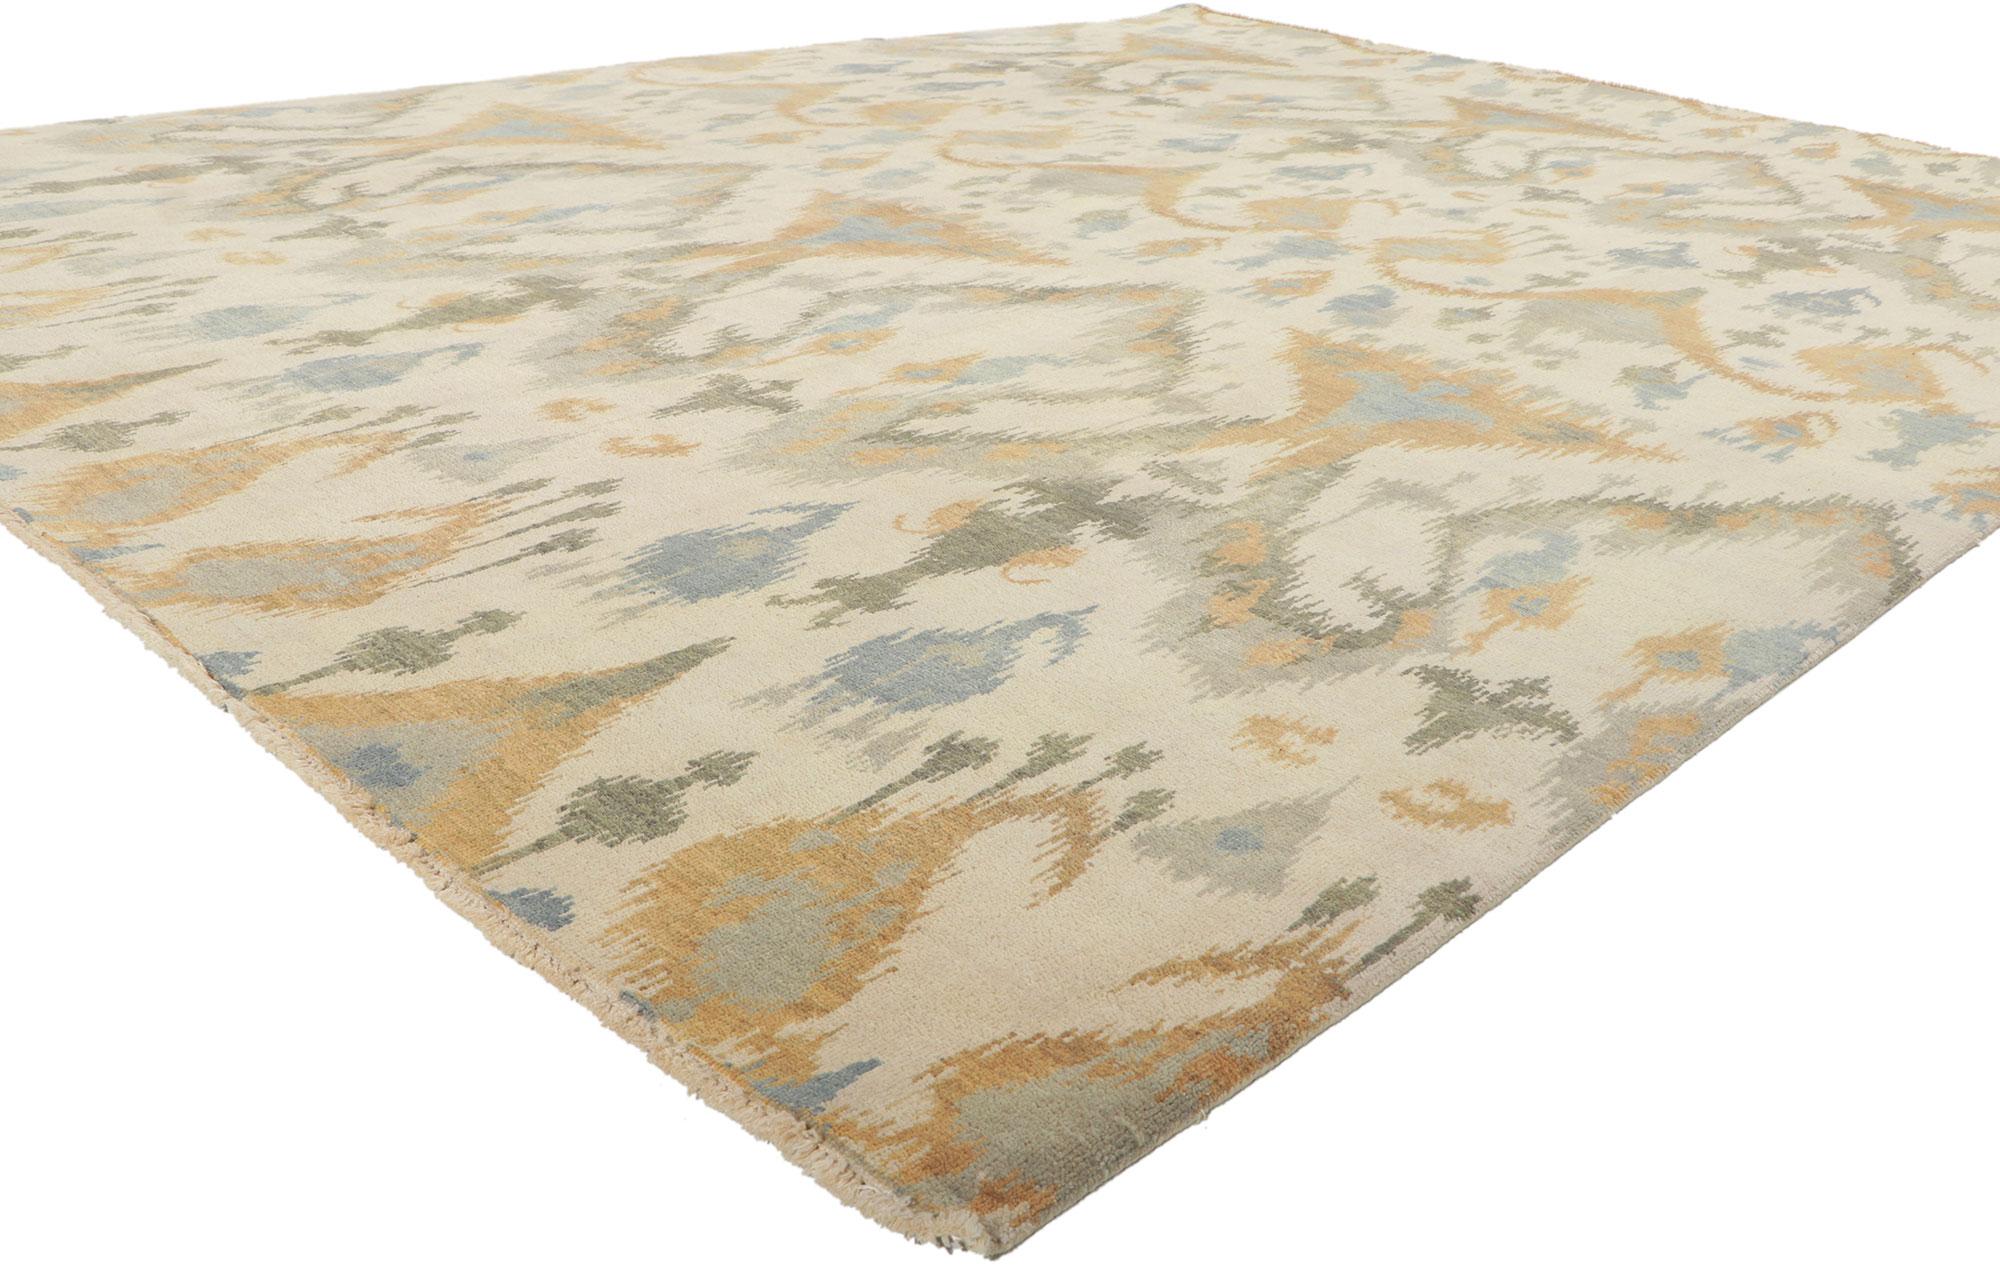 30045 New Transitional Ikat-Teppich, 08'01 x 10'04. Dieser handgeknüpfte Ikat-Teppich aus Wolle aus Indien besticht durch seine unglaubliche Detailtreue und Textur und ist eine faszinierende Vision gewebter Schönheit. Das auffällige Ikat-Muster und